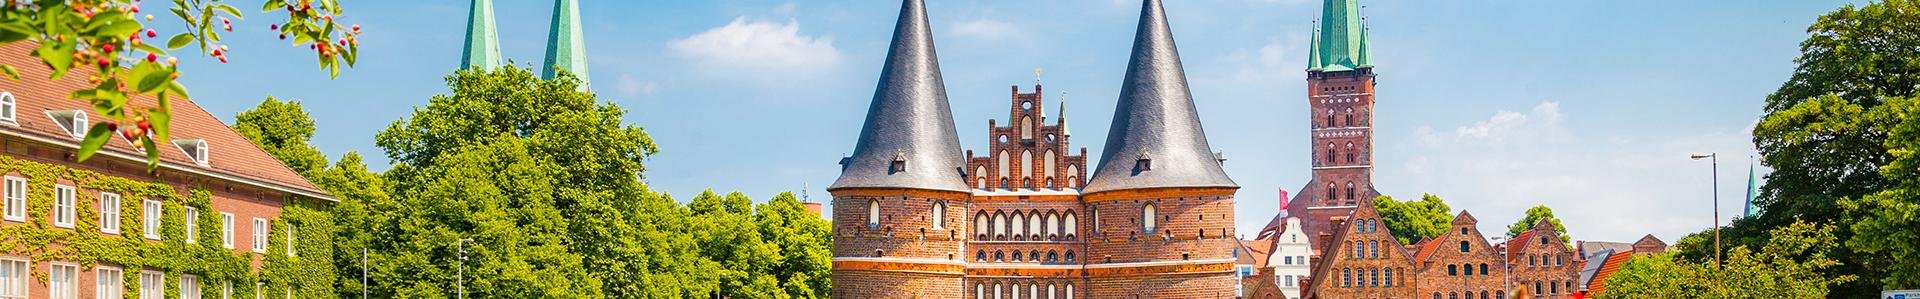 Holsentor, Lübeck, Duitsland